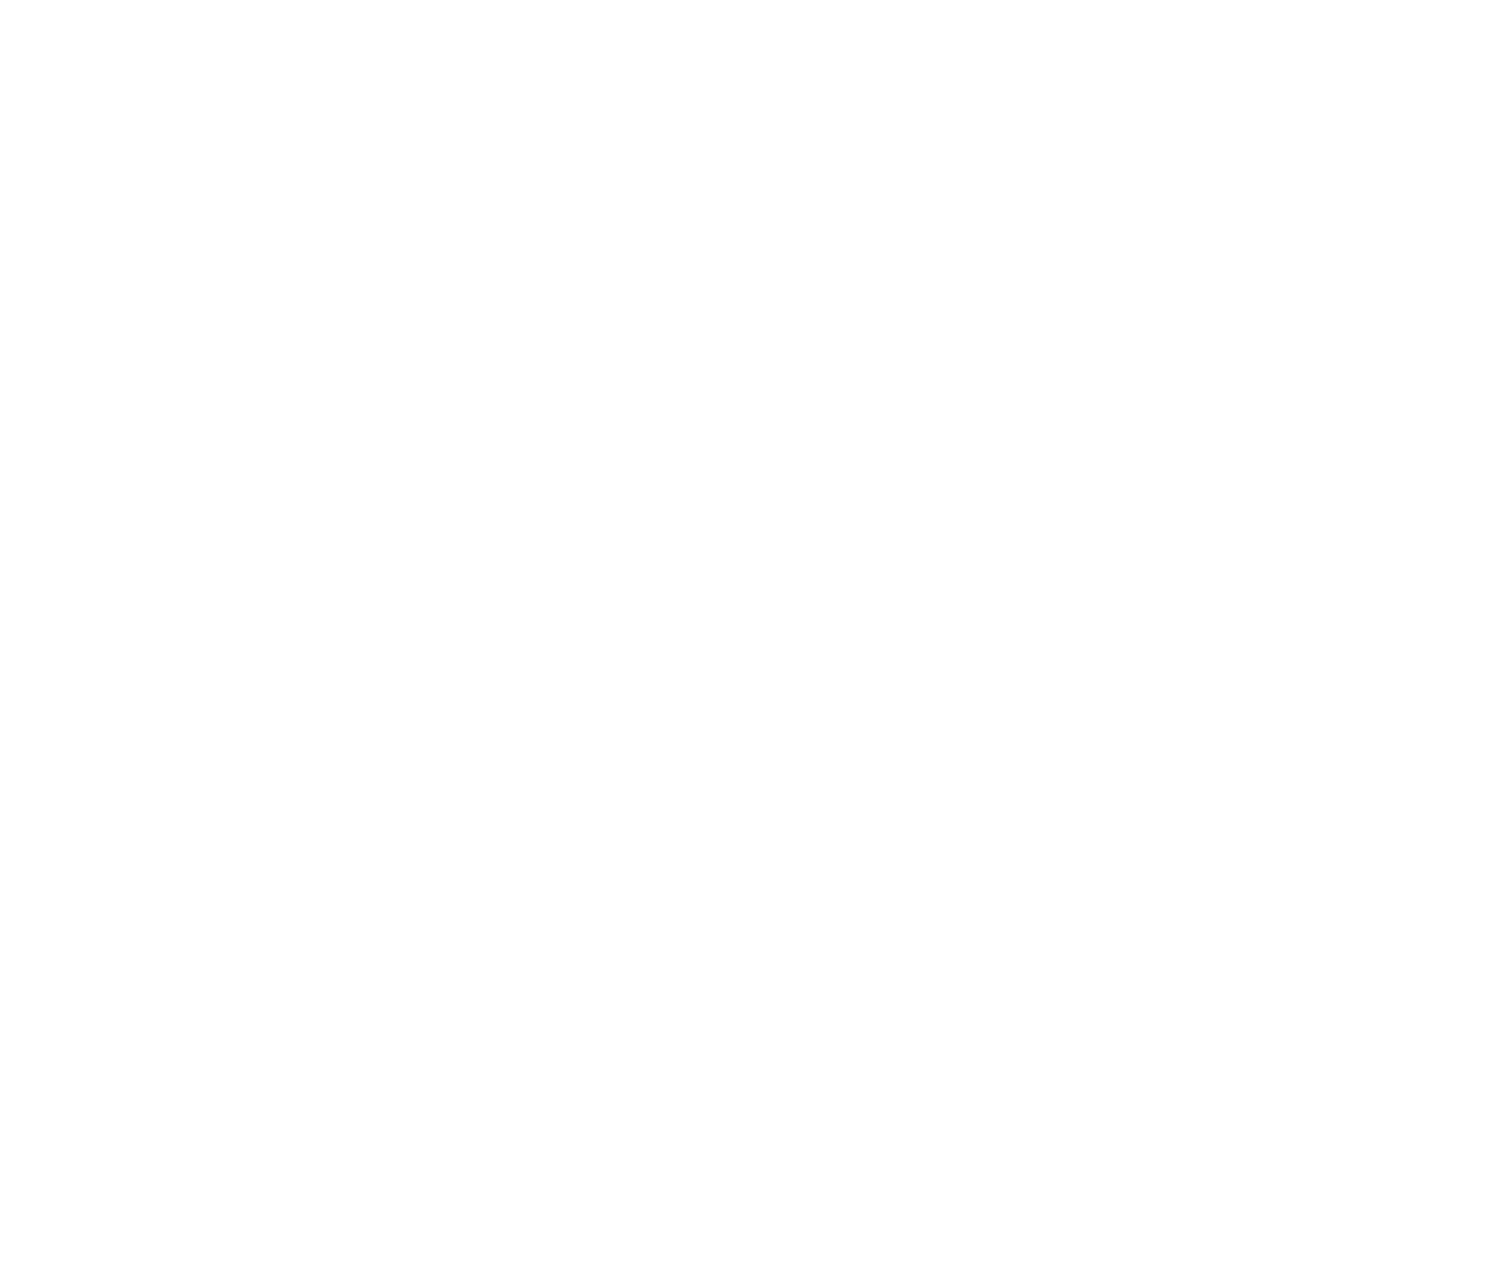 Forward Operating Base Brewing Company